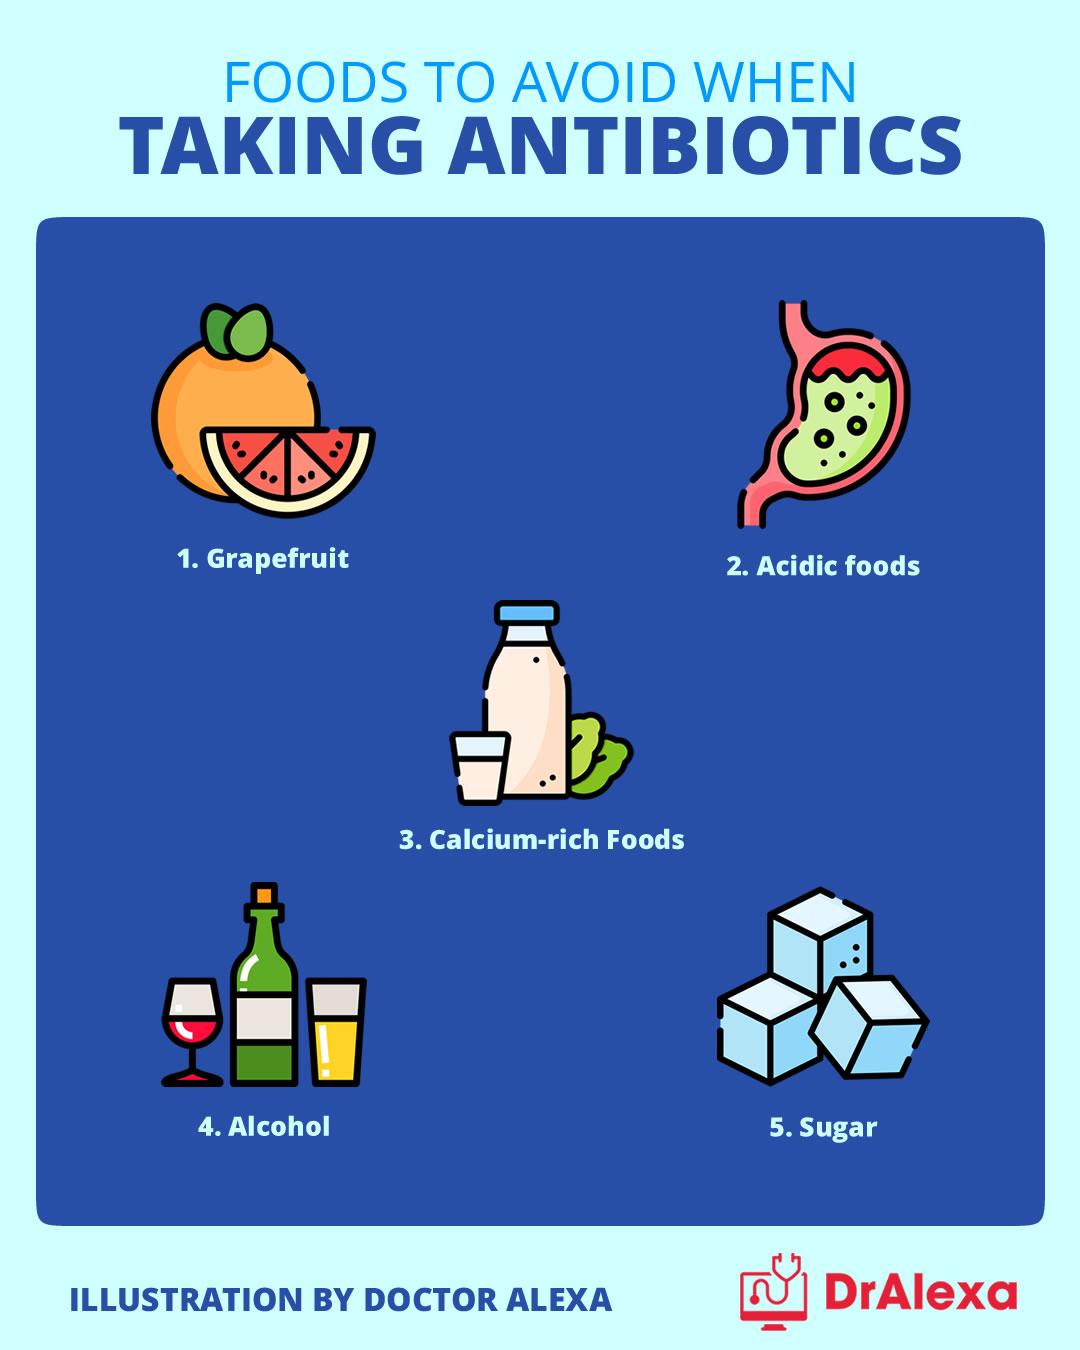 Foods to avoid when taking antibiotics